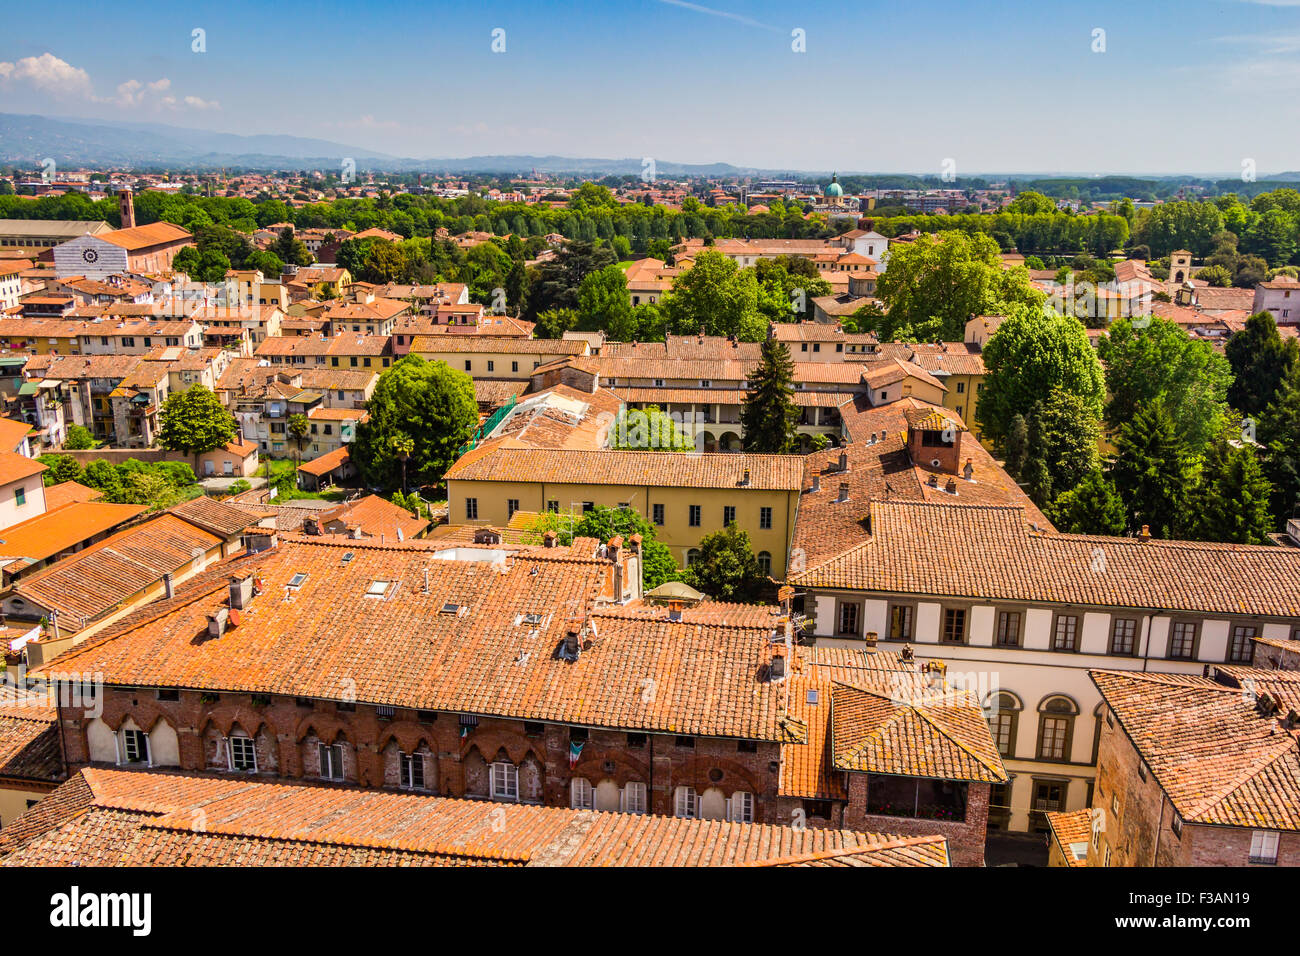 Vistas a la ciudad italiana de Lucca con los típicos tejados de terracota Foto de stock